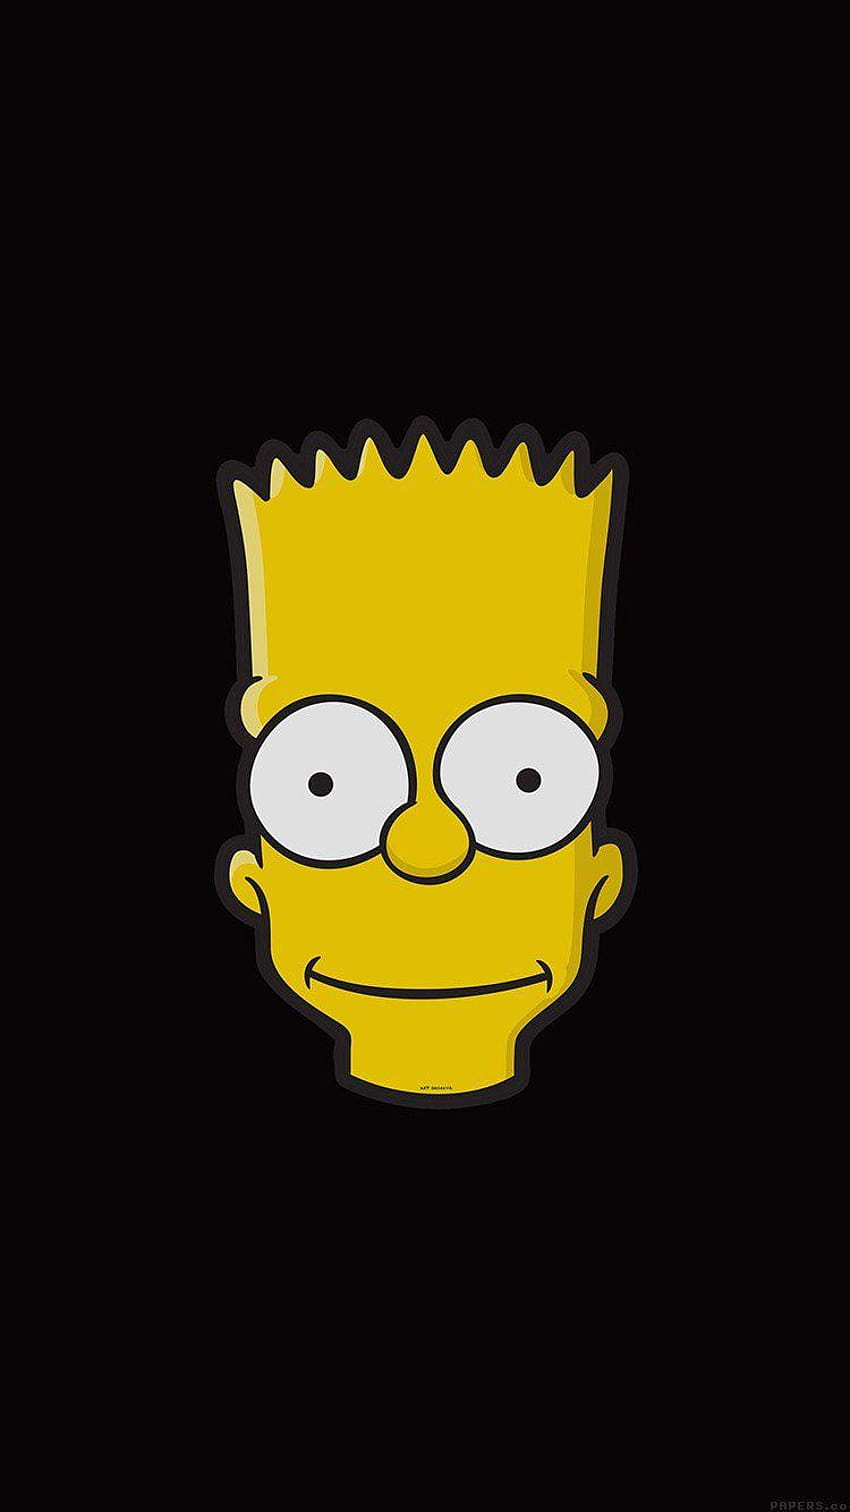 Bart sad aesthetic